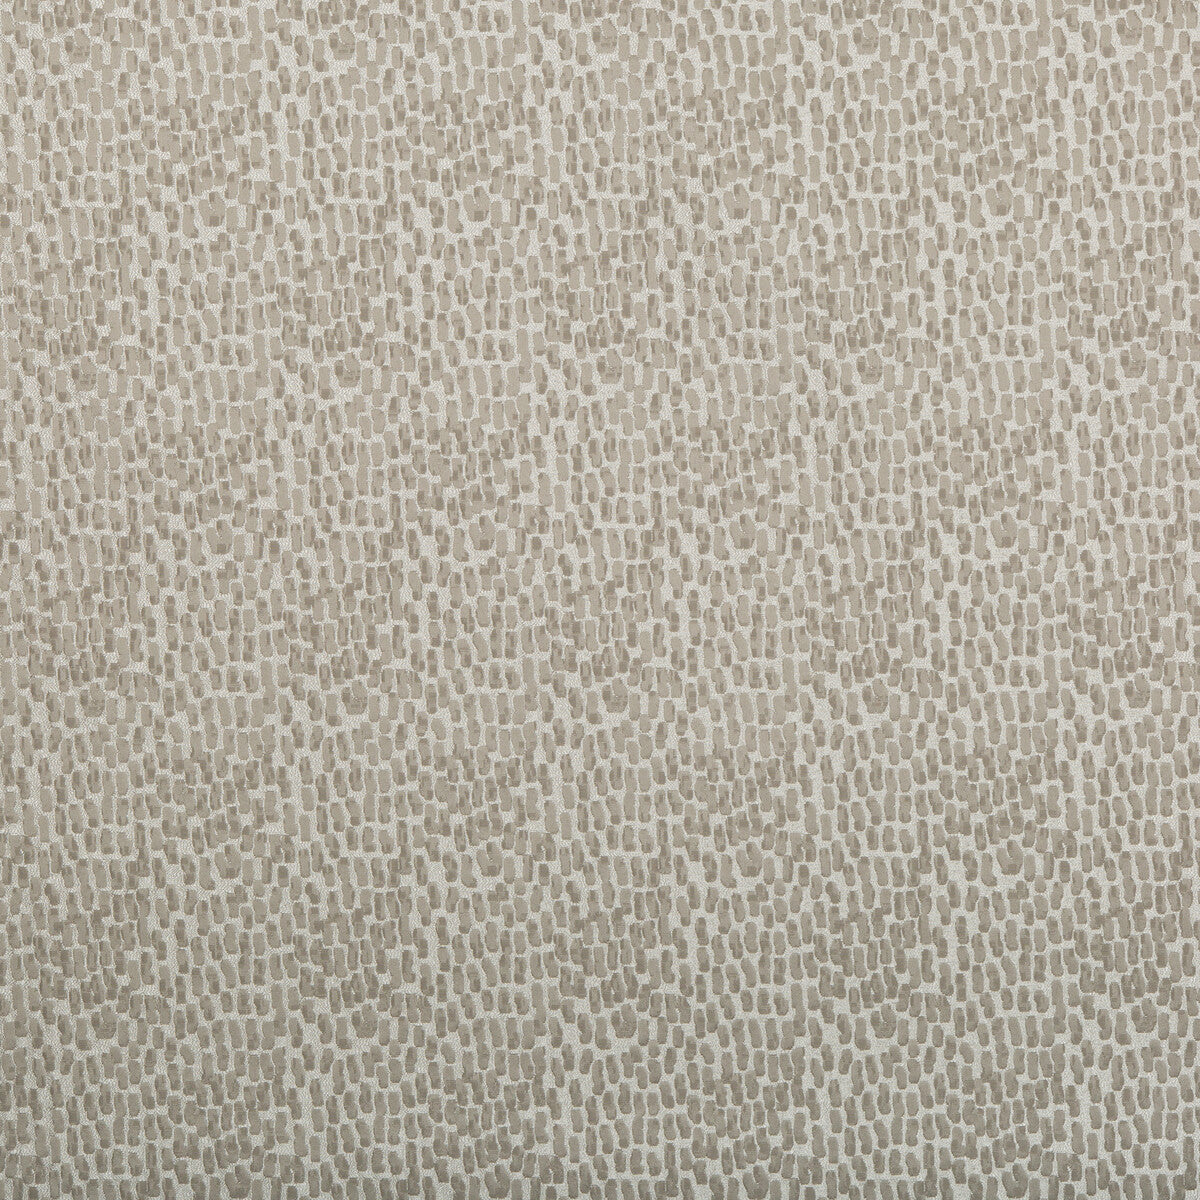 Kravet Basics fabric in 34412-11 color - pattern 34412.11.0 - by Kravet Basics